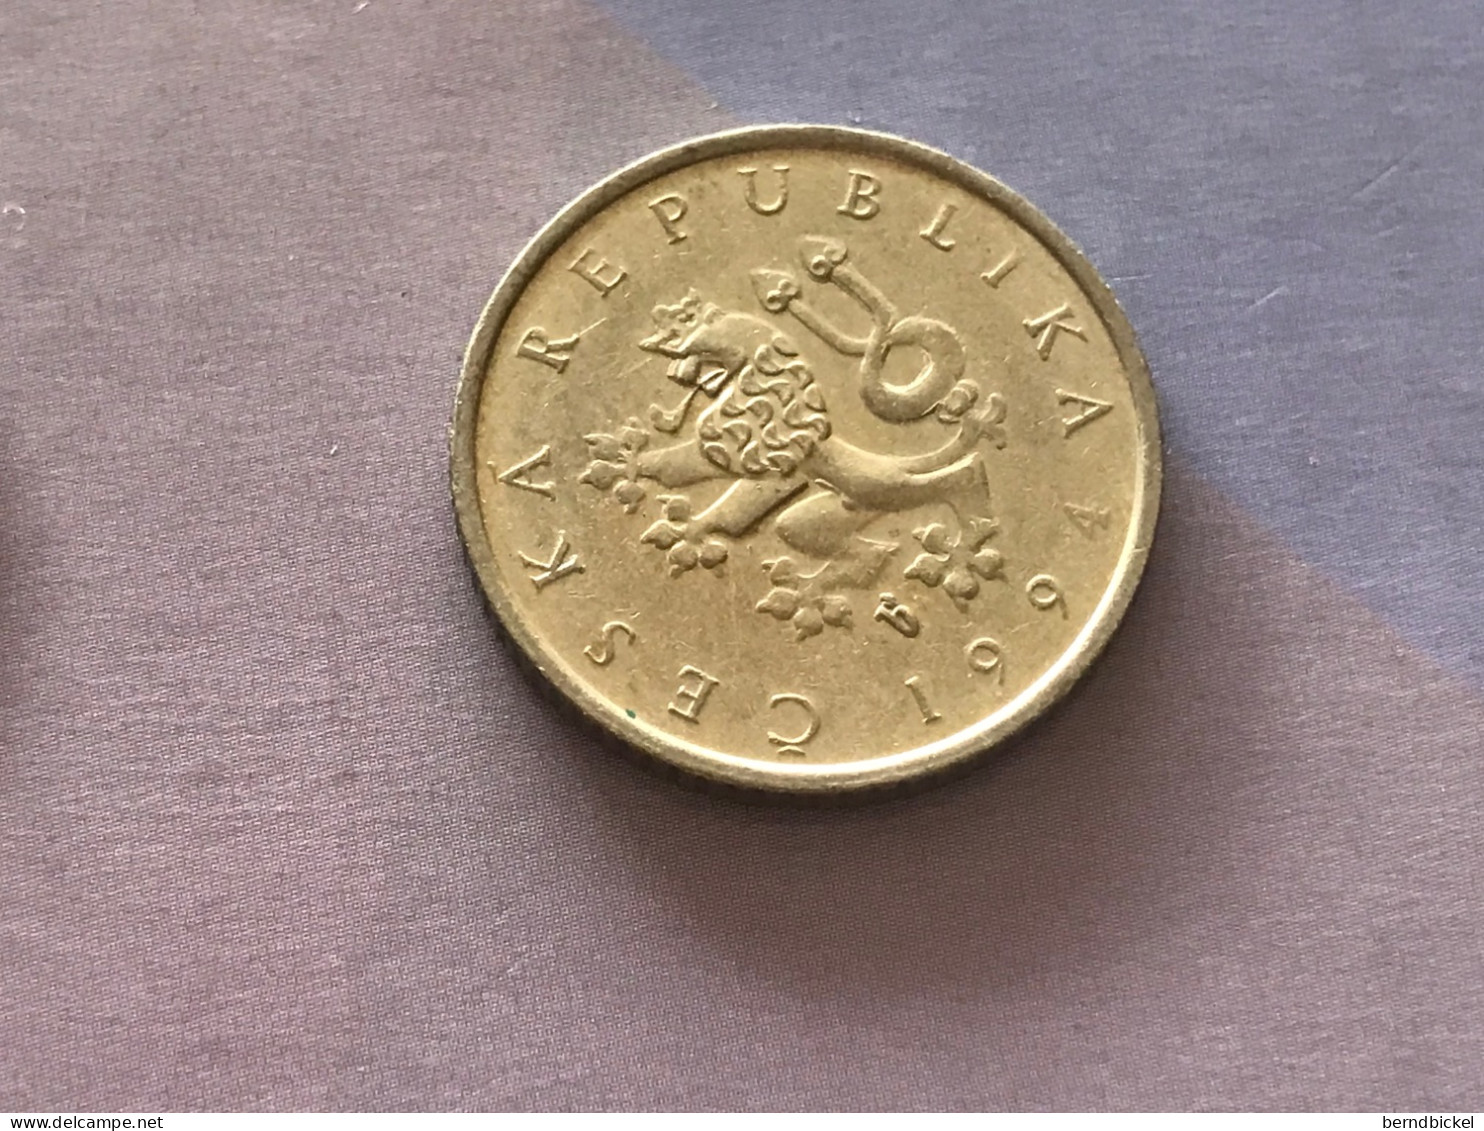 Münze Münzen Umlaufmünze Tschechische Republik 1 Krone 1994 - Tsjechië